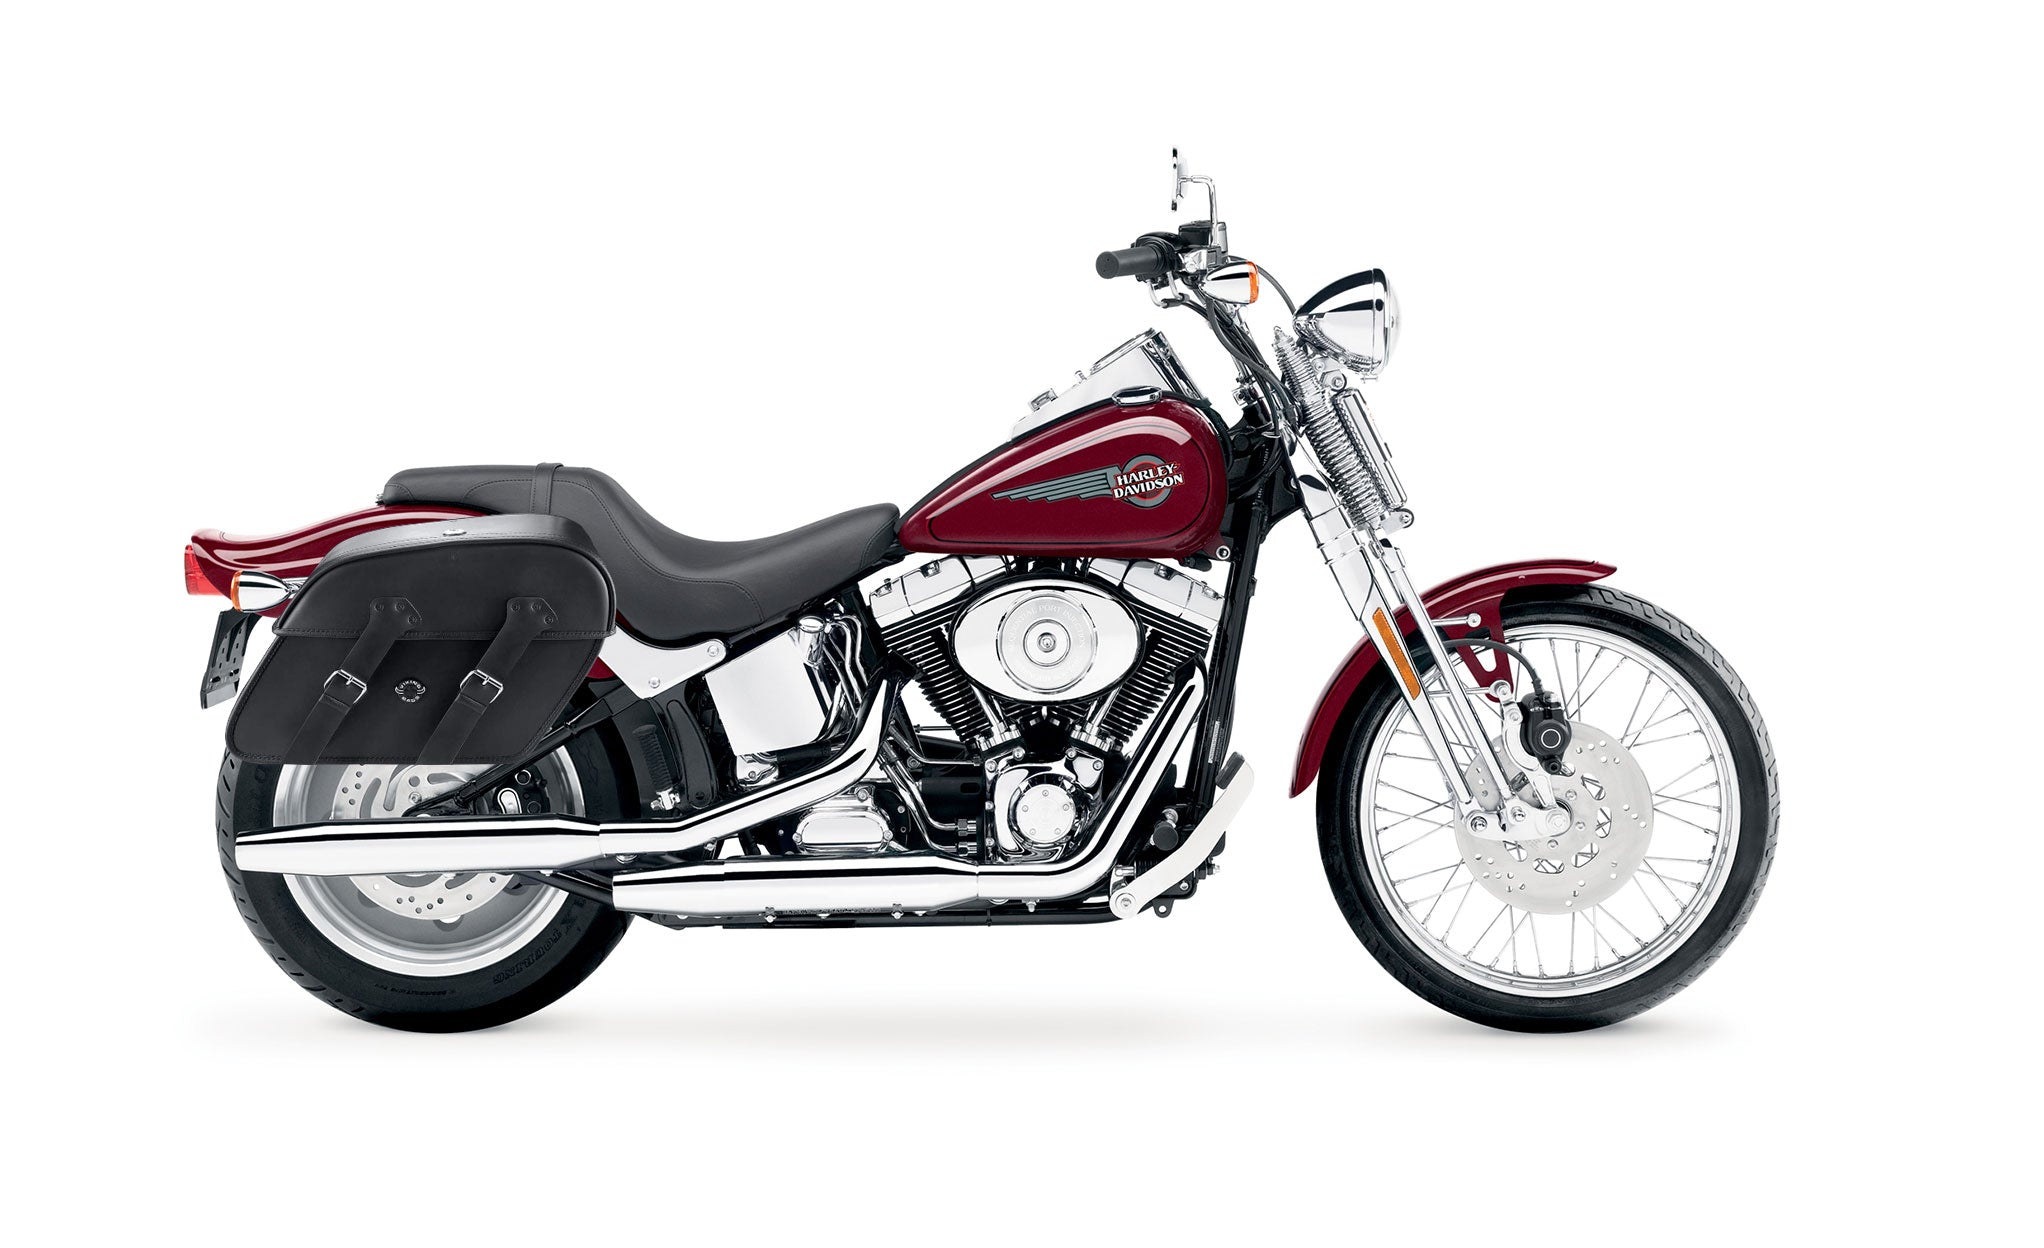 Viking Raven Extra Large Leather Motorcycle Saddlebags For Harley Softail Springer Fxsts I on Bike Photo @expand